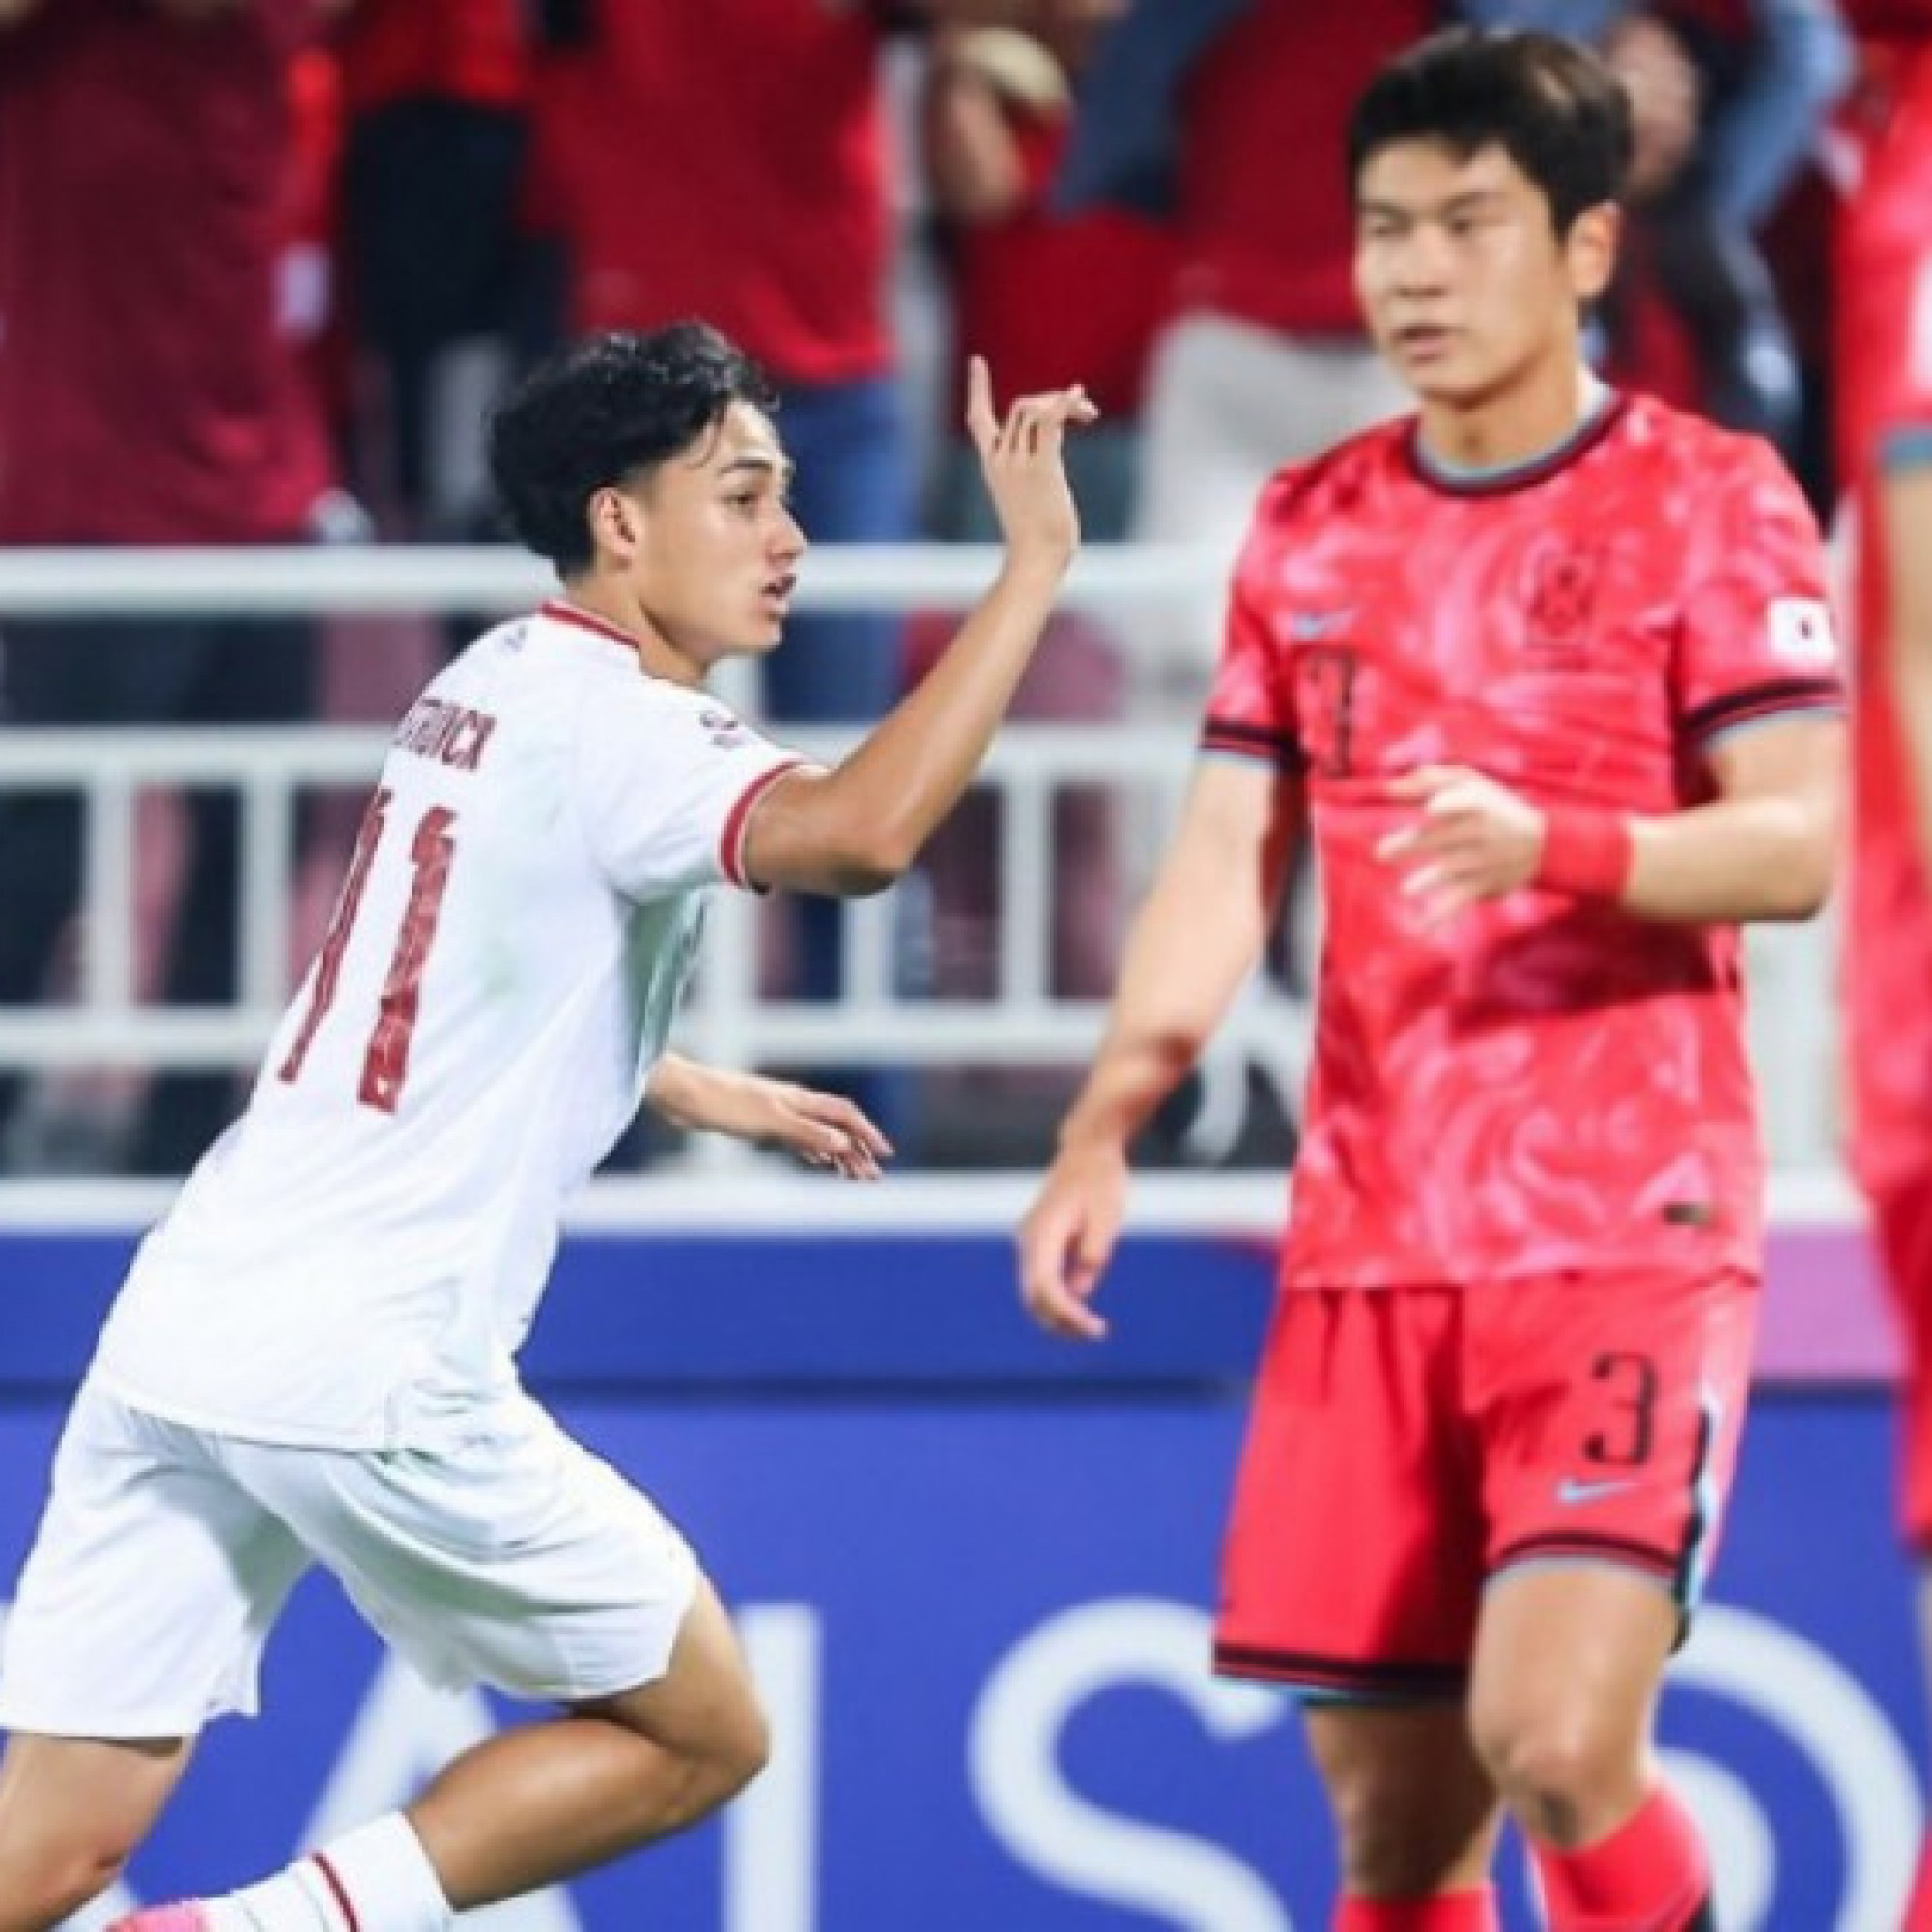  - U23 Indonesia thắng sốc vì U23 Hàn Quốc quá kém hay HLV Shin quá hay?